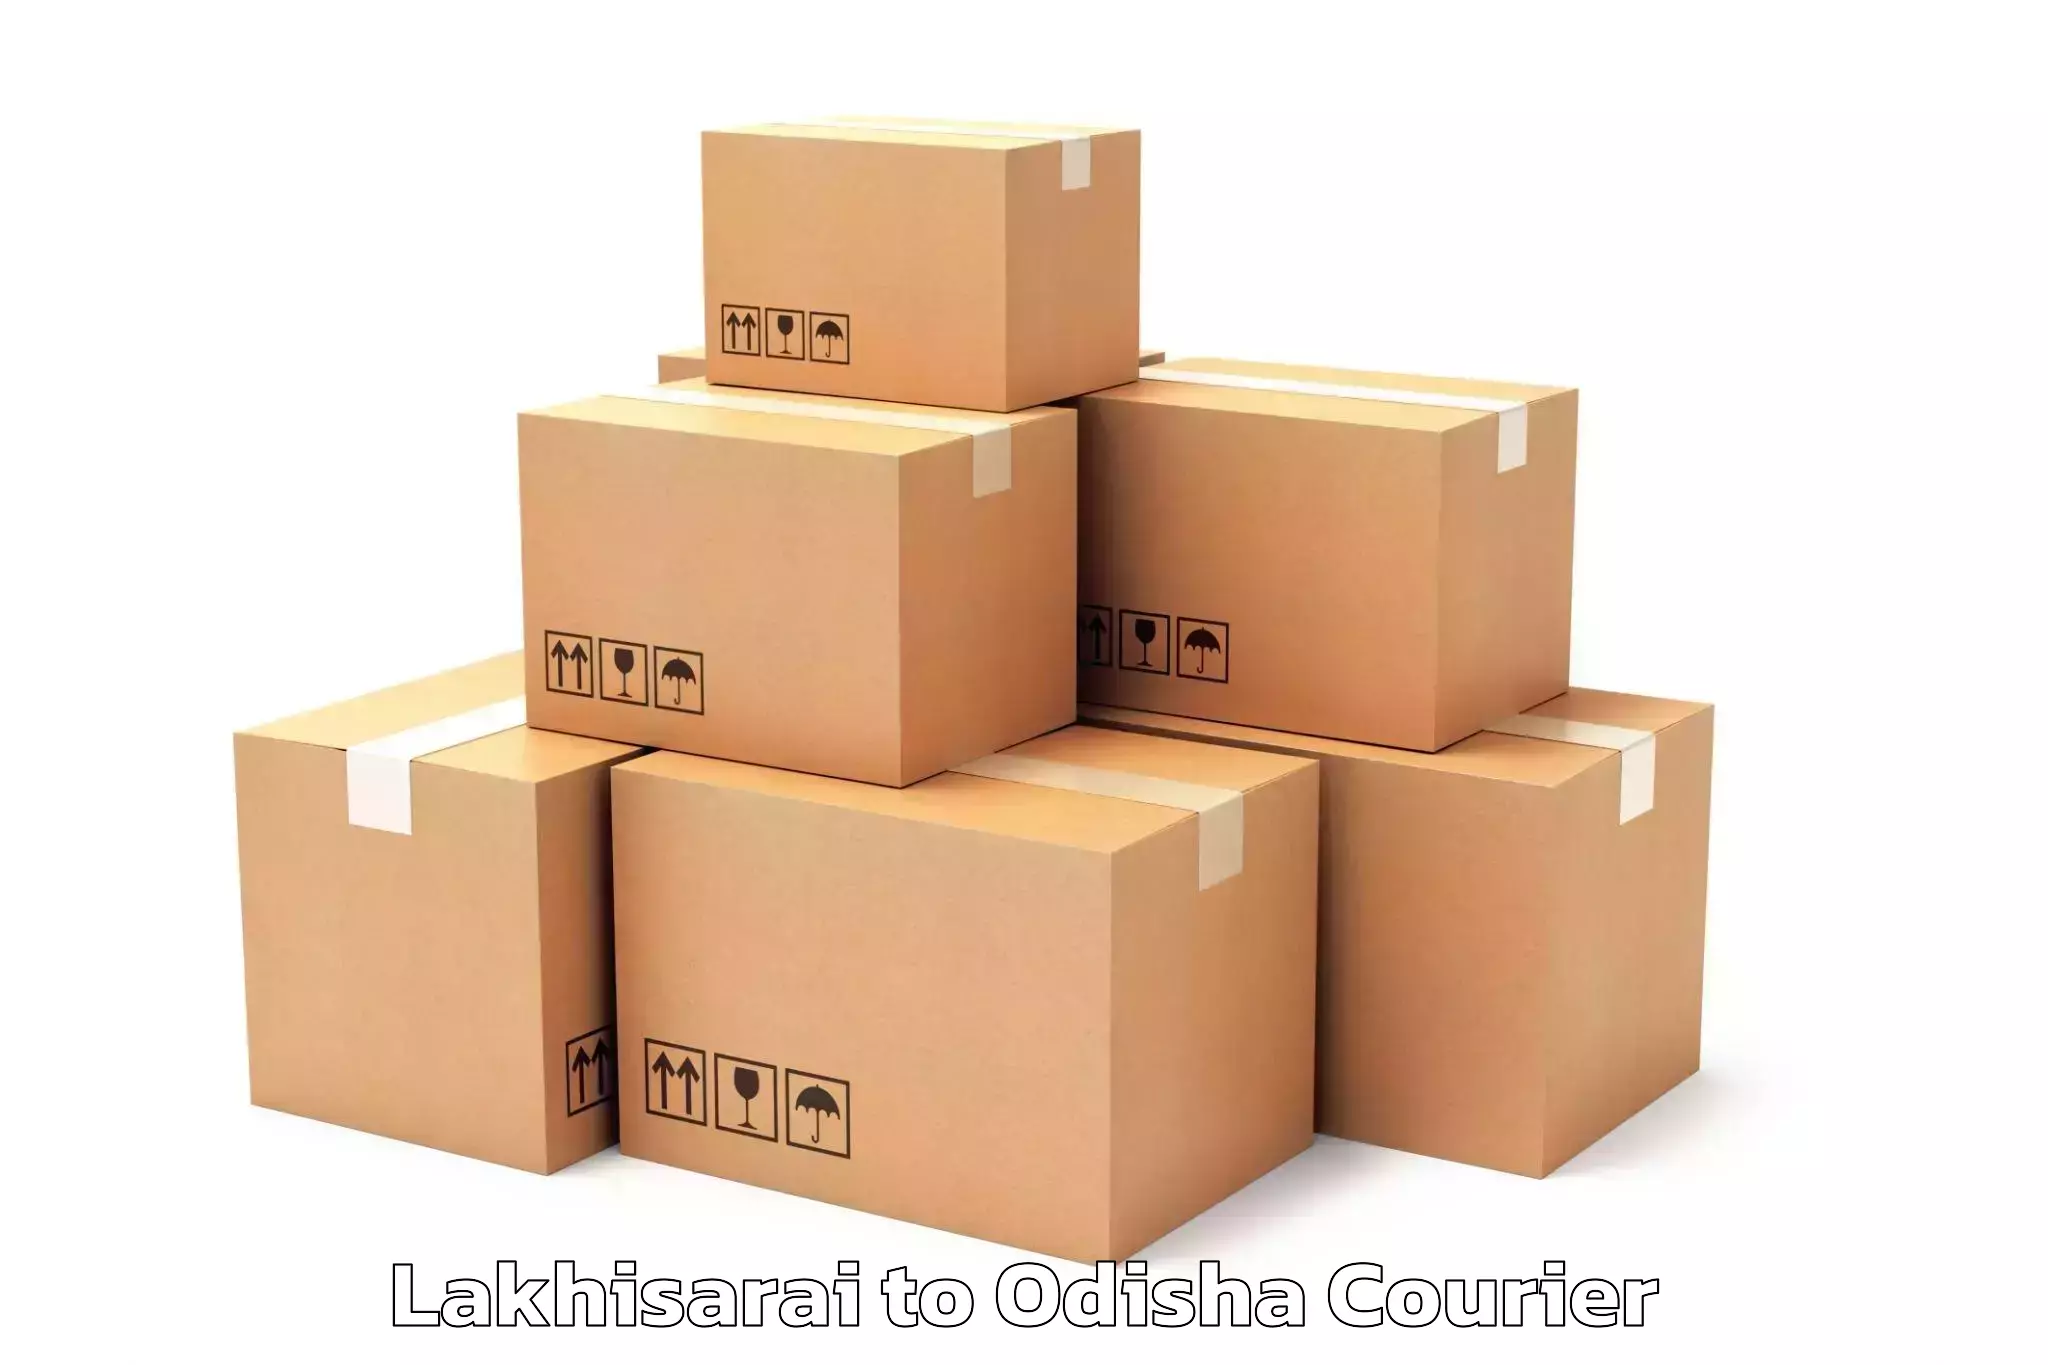 Furniture delivery service in Lakhisarai to Brajrajnagar